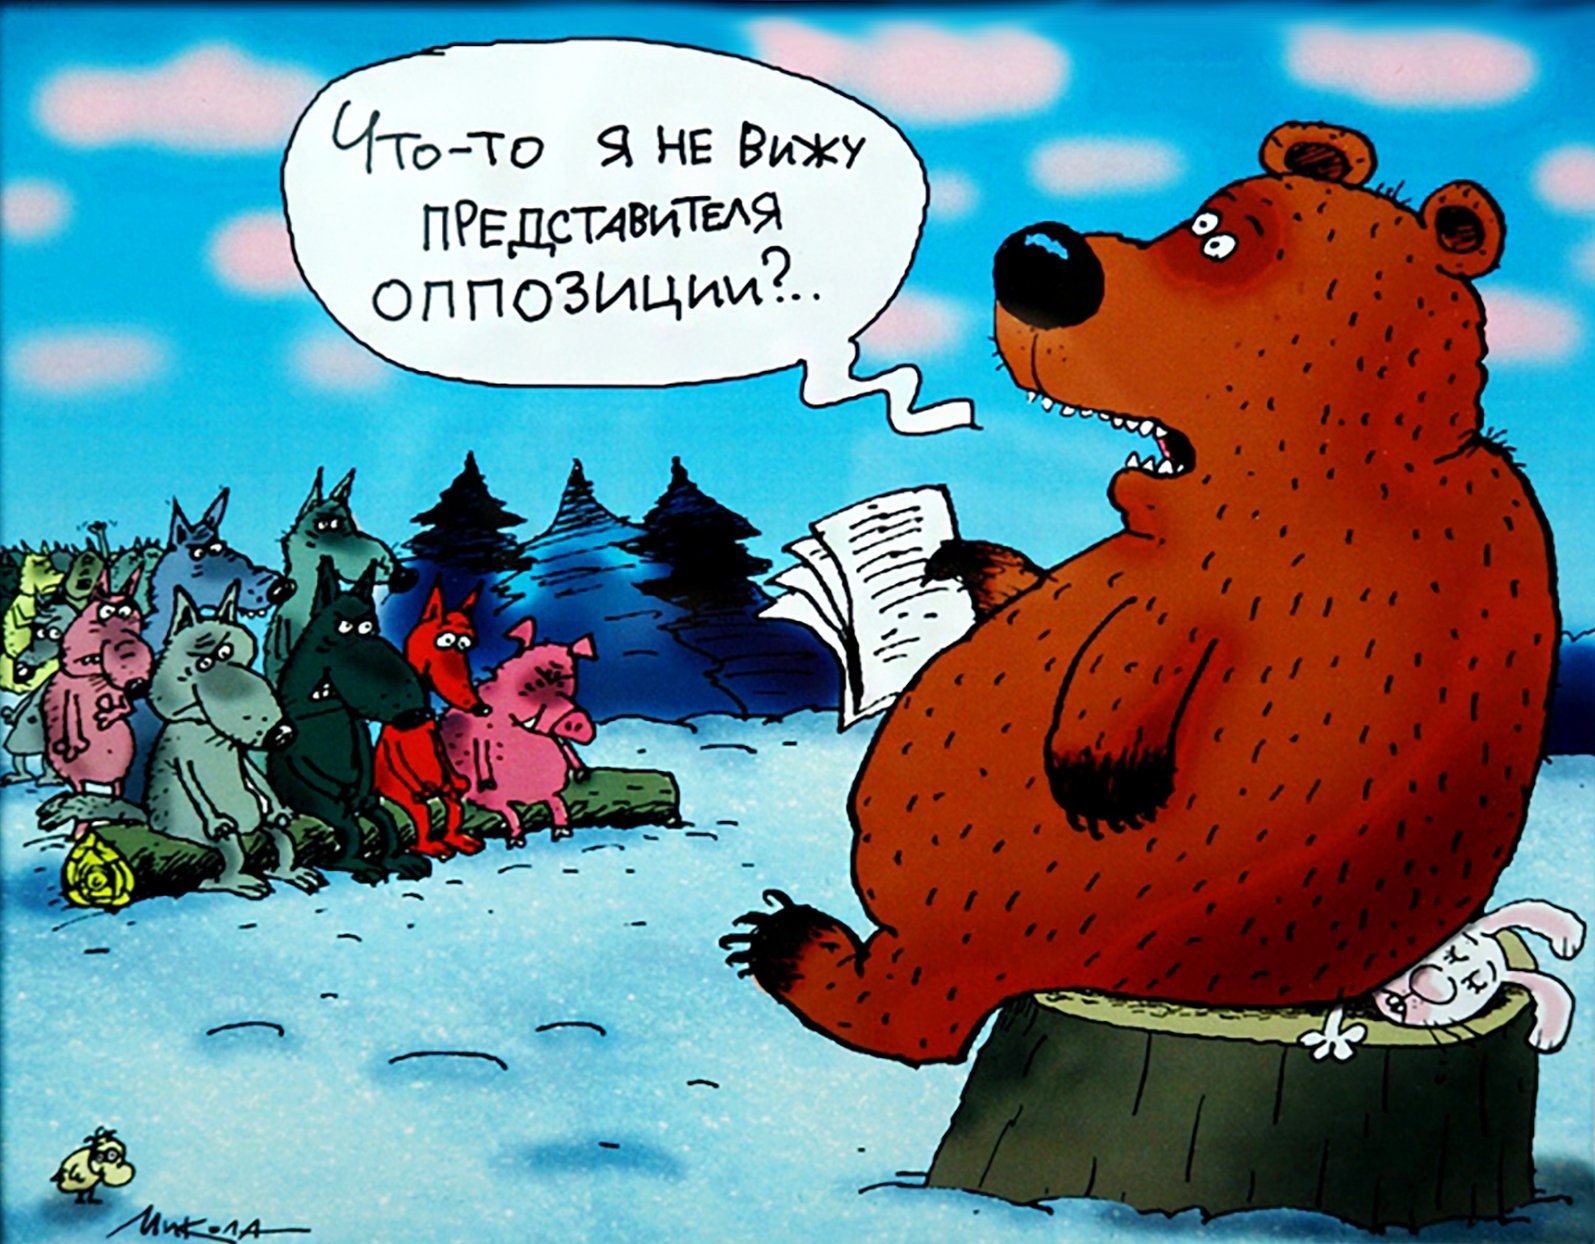 Глупый скоро. Медведь карикатура. Шутки про медведя. Анекдоты про медведей смешные. Шутки про медведя в России.